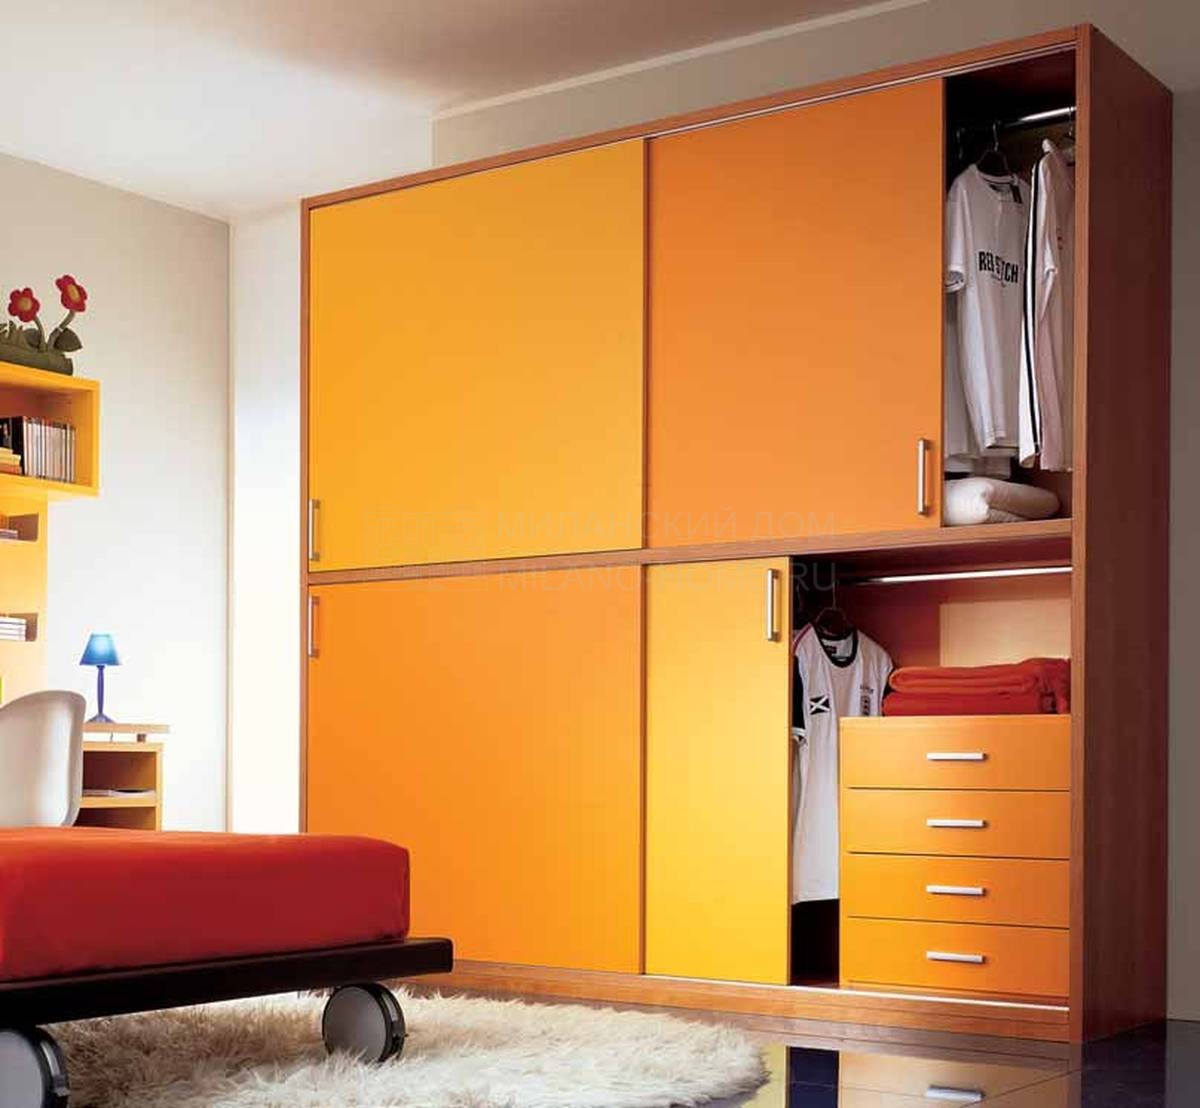 Шкаф с раздвижными дверями Anta liscia intera из Италии фабрики DEAR KIDS